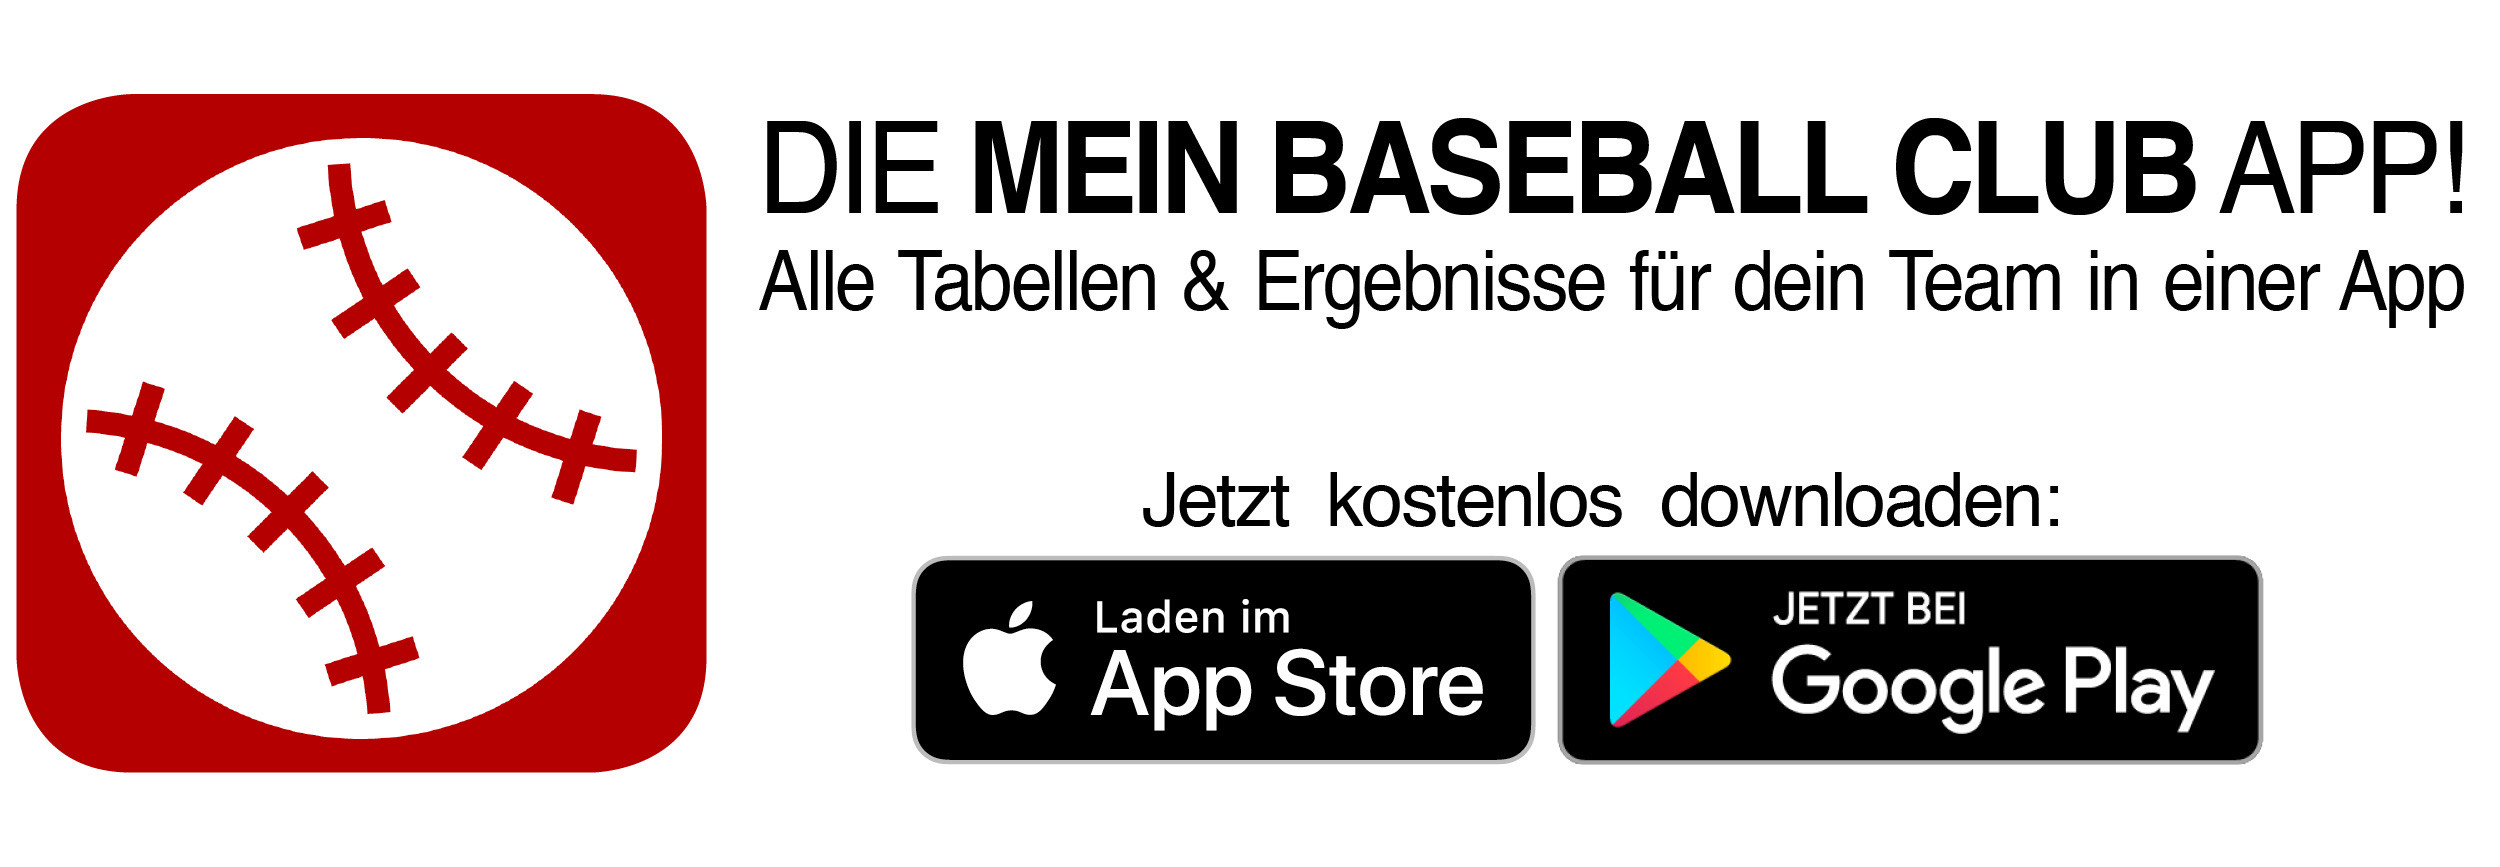 Mein Baseball Club App